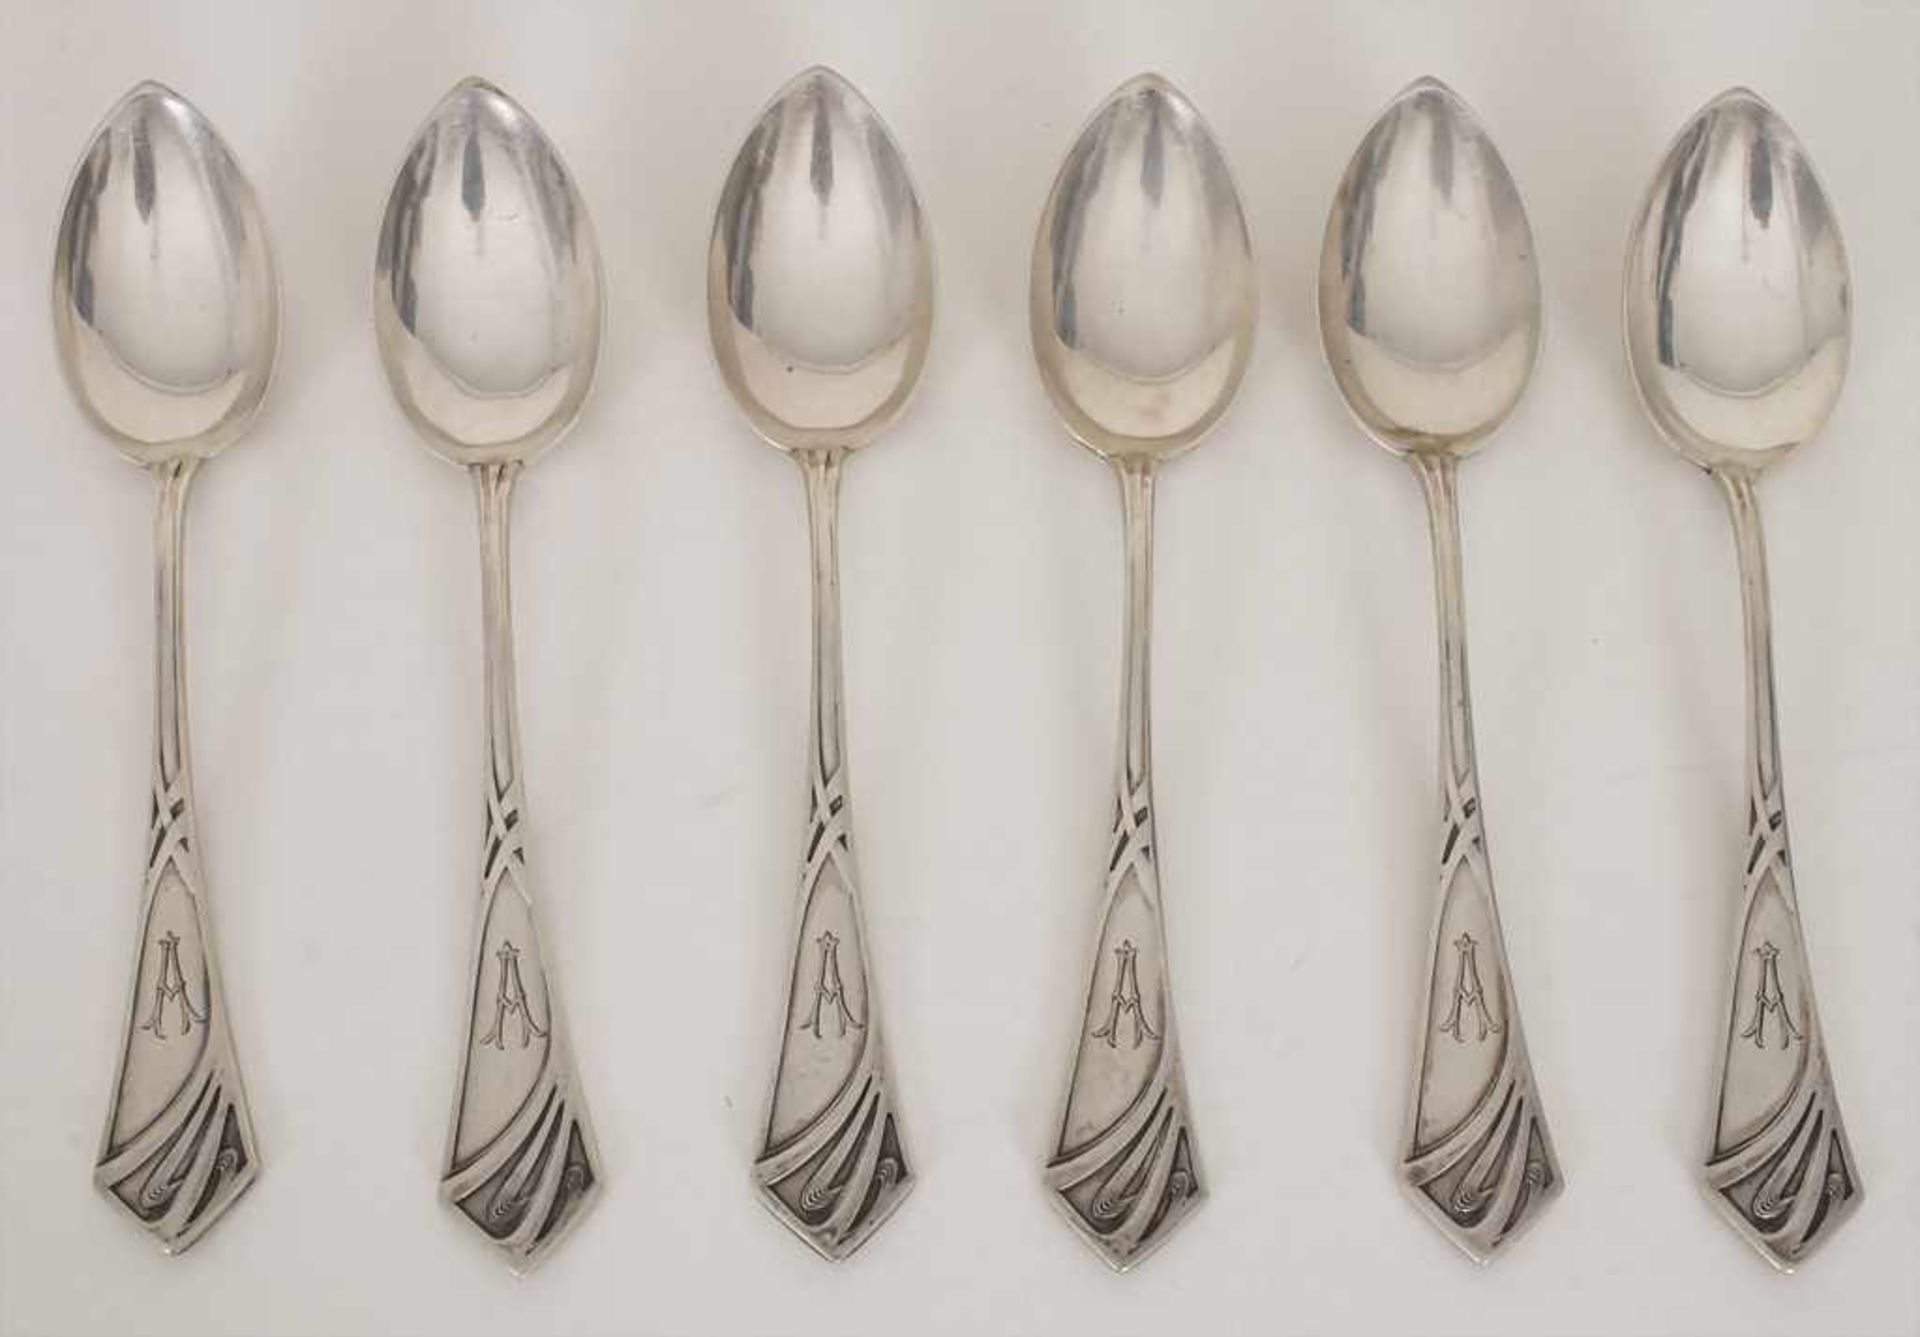 6 Jugendstil Kaffeelöffel / 6 Art Nouveau coffee spoons, Fa. Auerhahn, um 1900Material: Silber, im